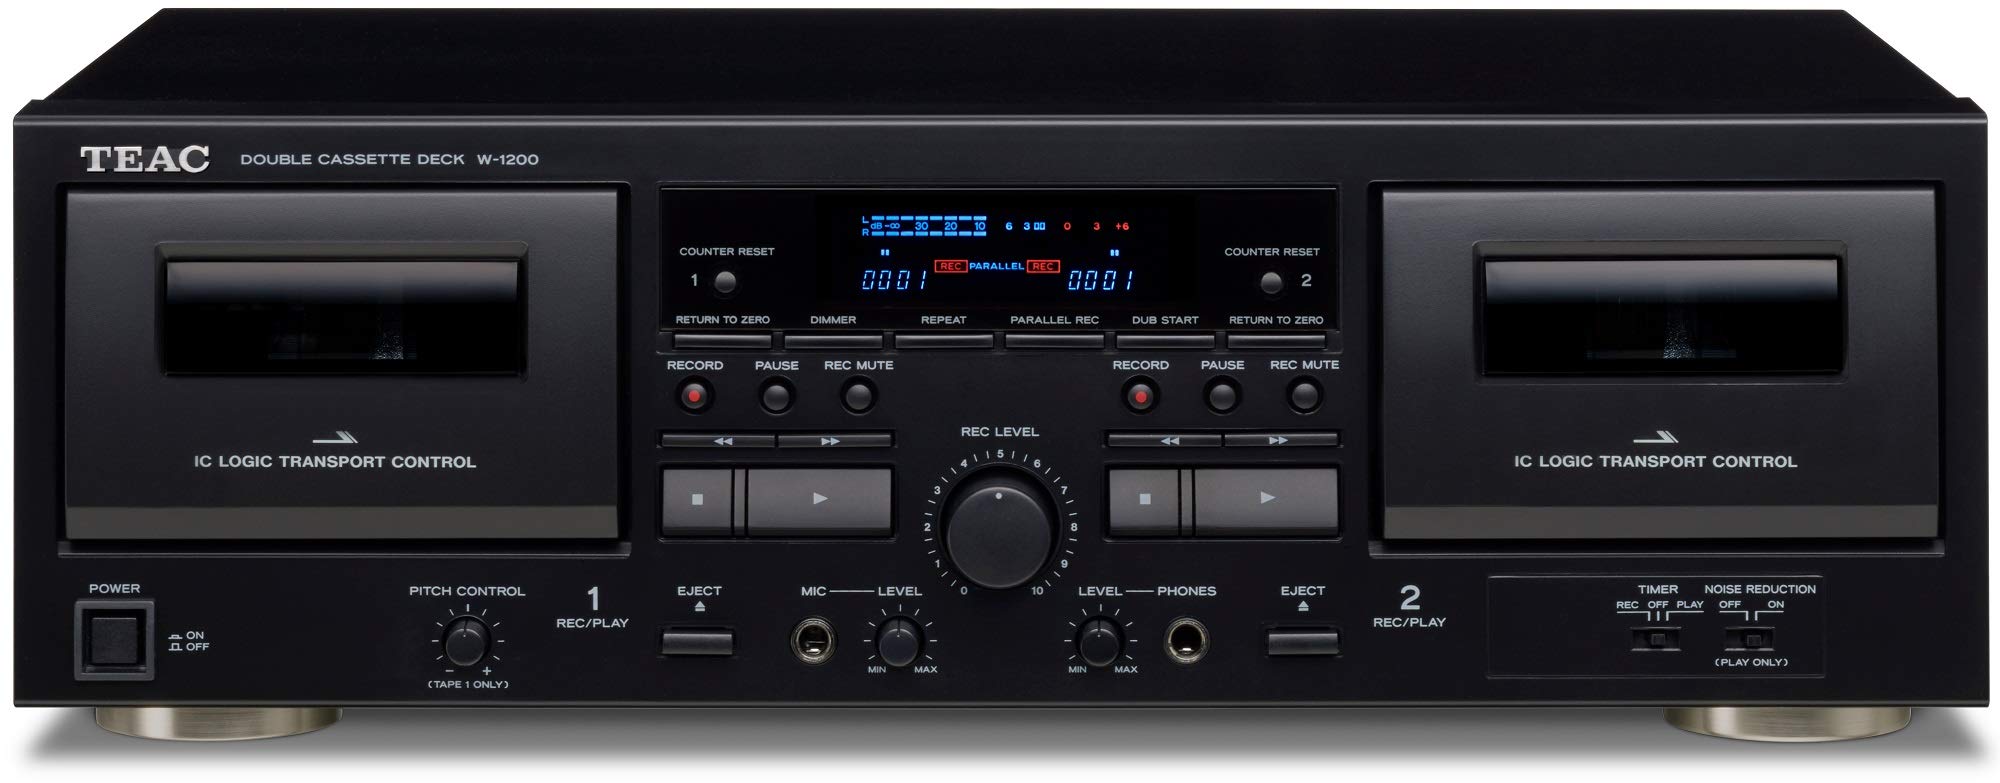 Teac Reproductor de casete doble W-1200 con grabadora/USB/Pitch/entrada de micrófono de karaoke y control remoto